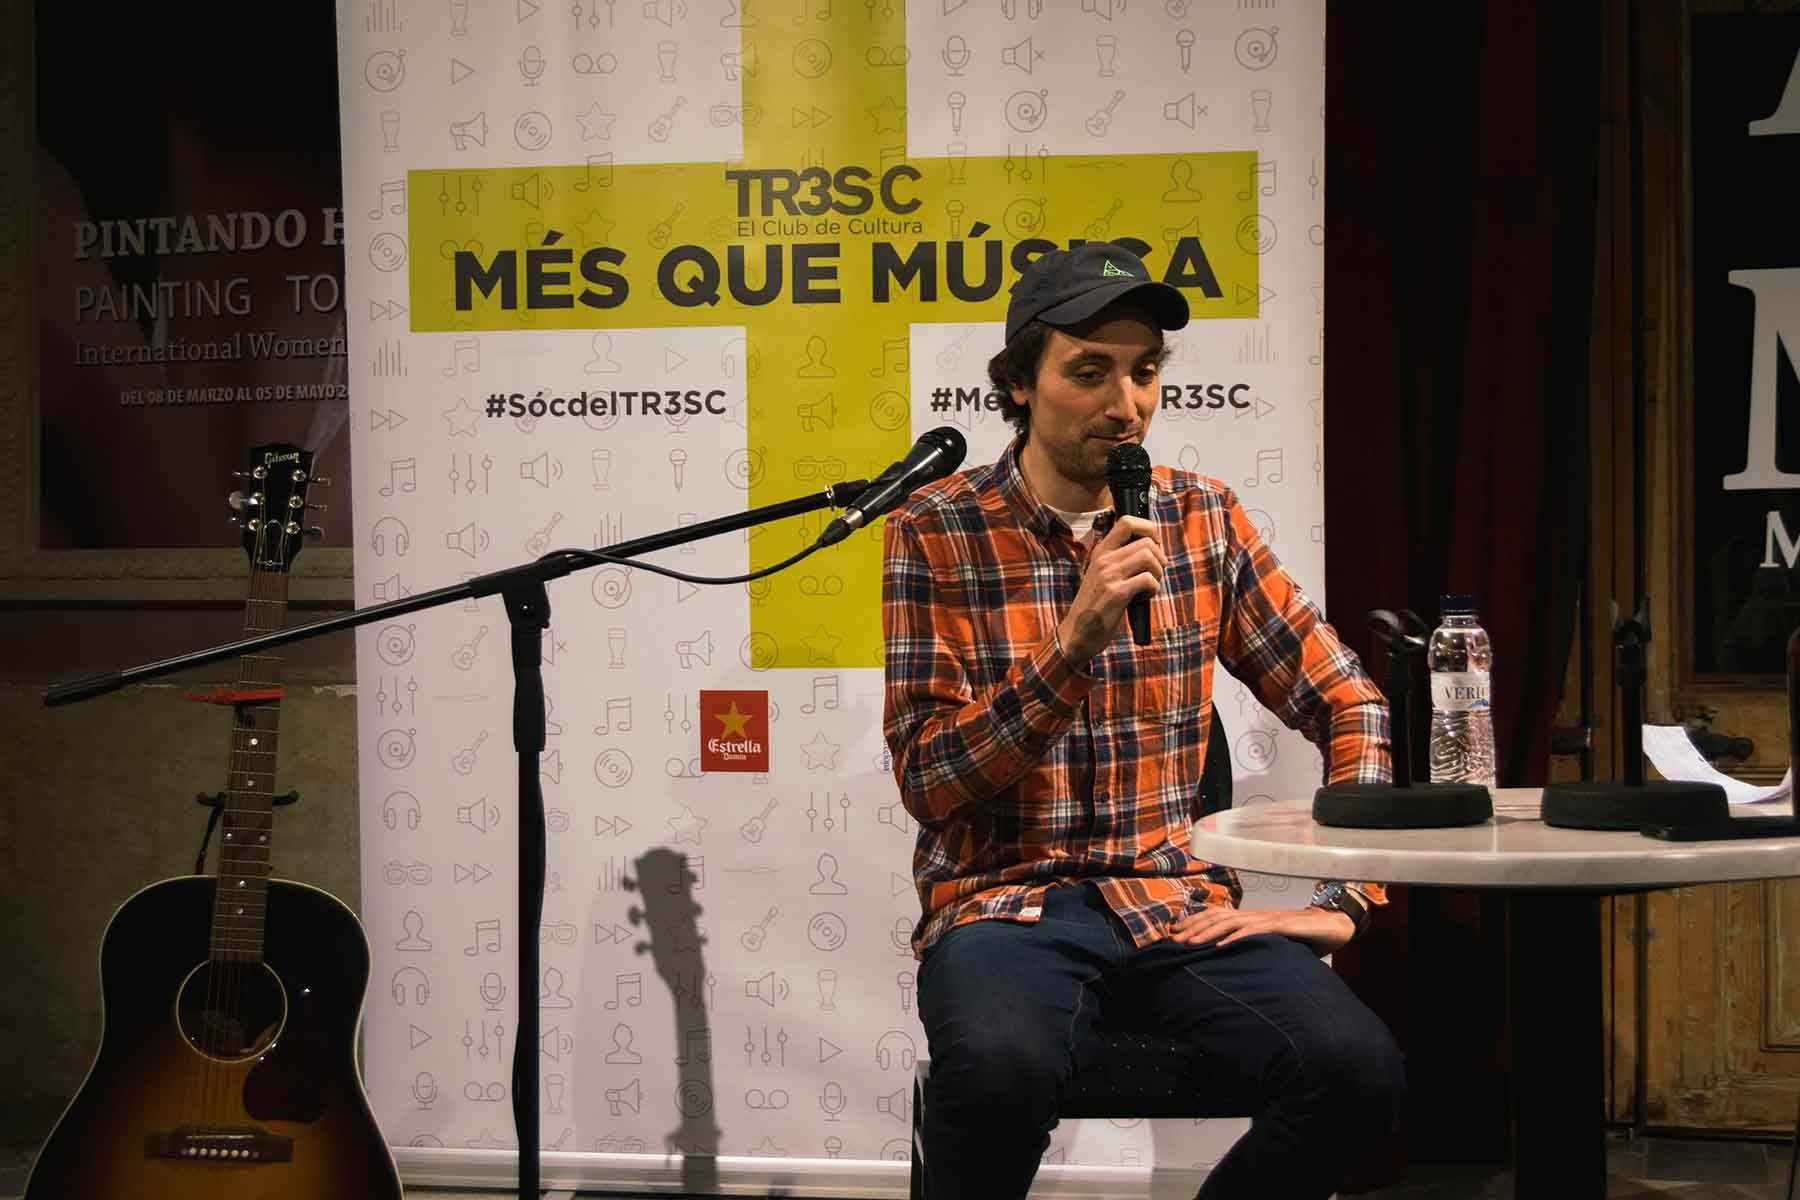   #MésQueMúsica amb Xavier Calvet